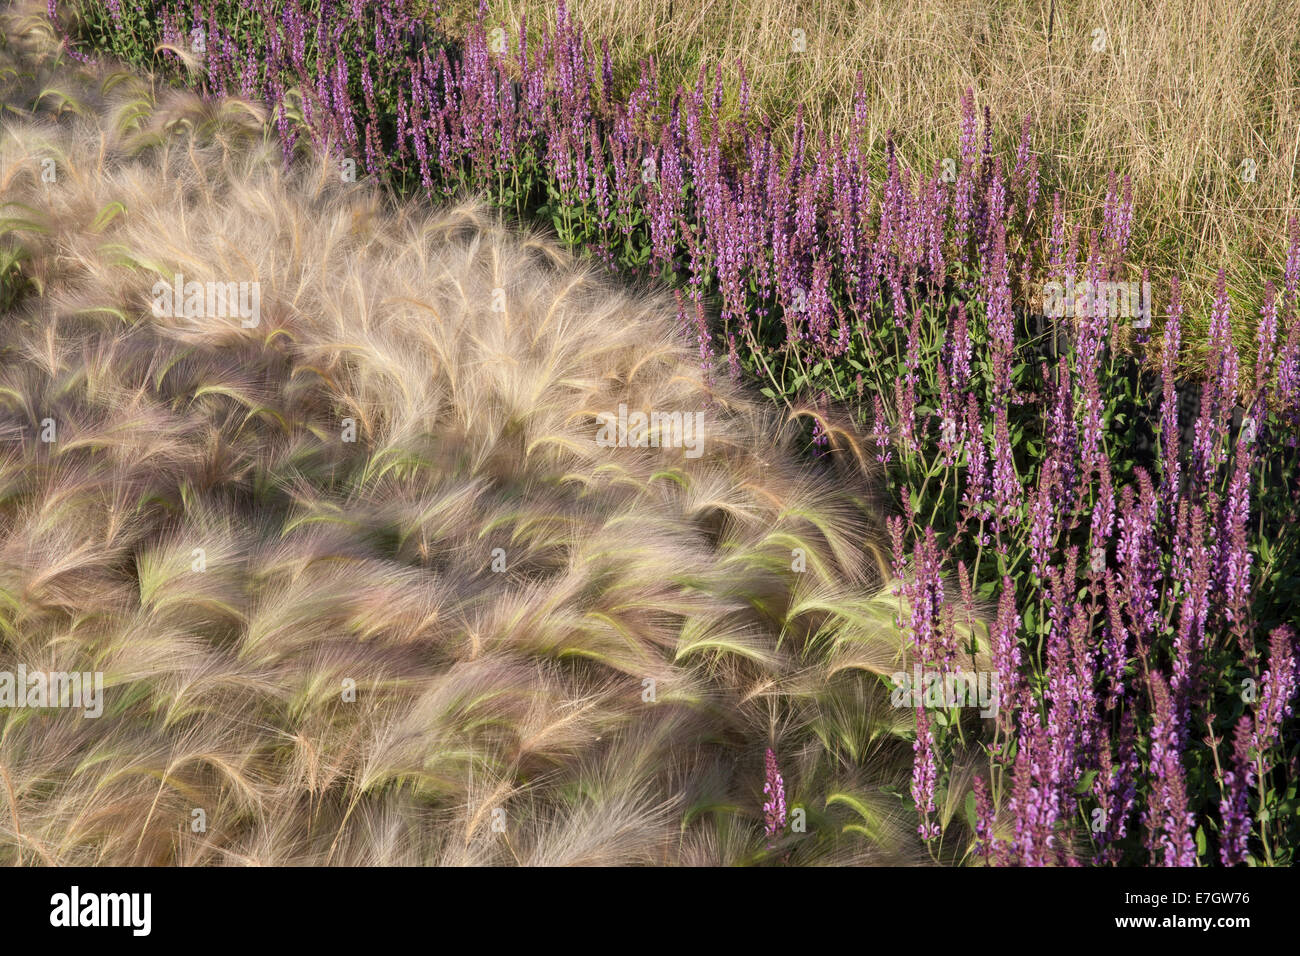 Jardin - voir le vent - bordures de bordure d'herbe ornementale - plantation d'herbe d'orge ornement Hordeum jubatum Salvia nemorosa 'Amethyst' - Royaume-Uni Banque D'Images